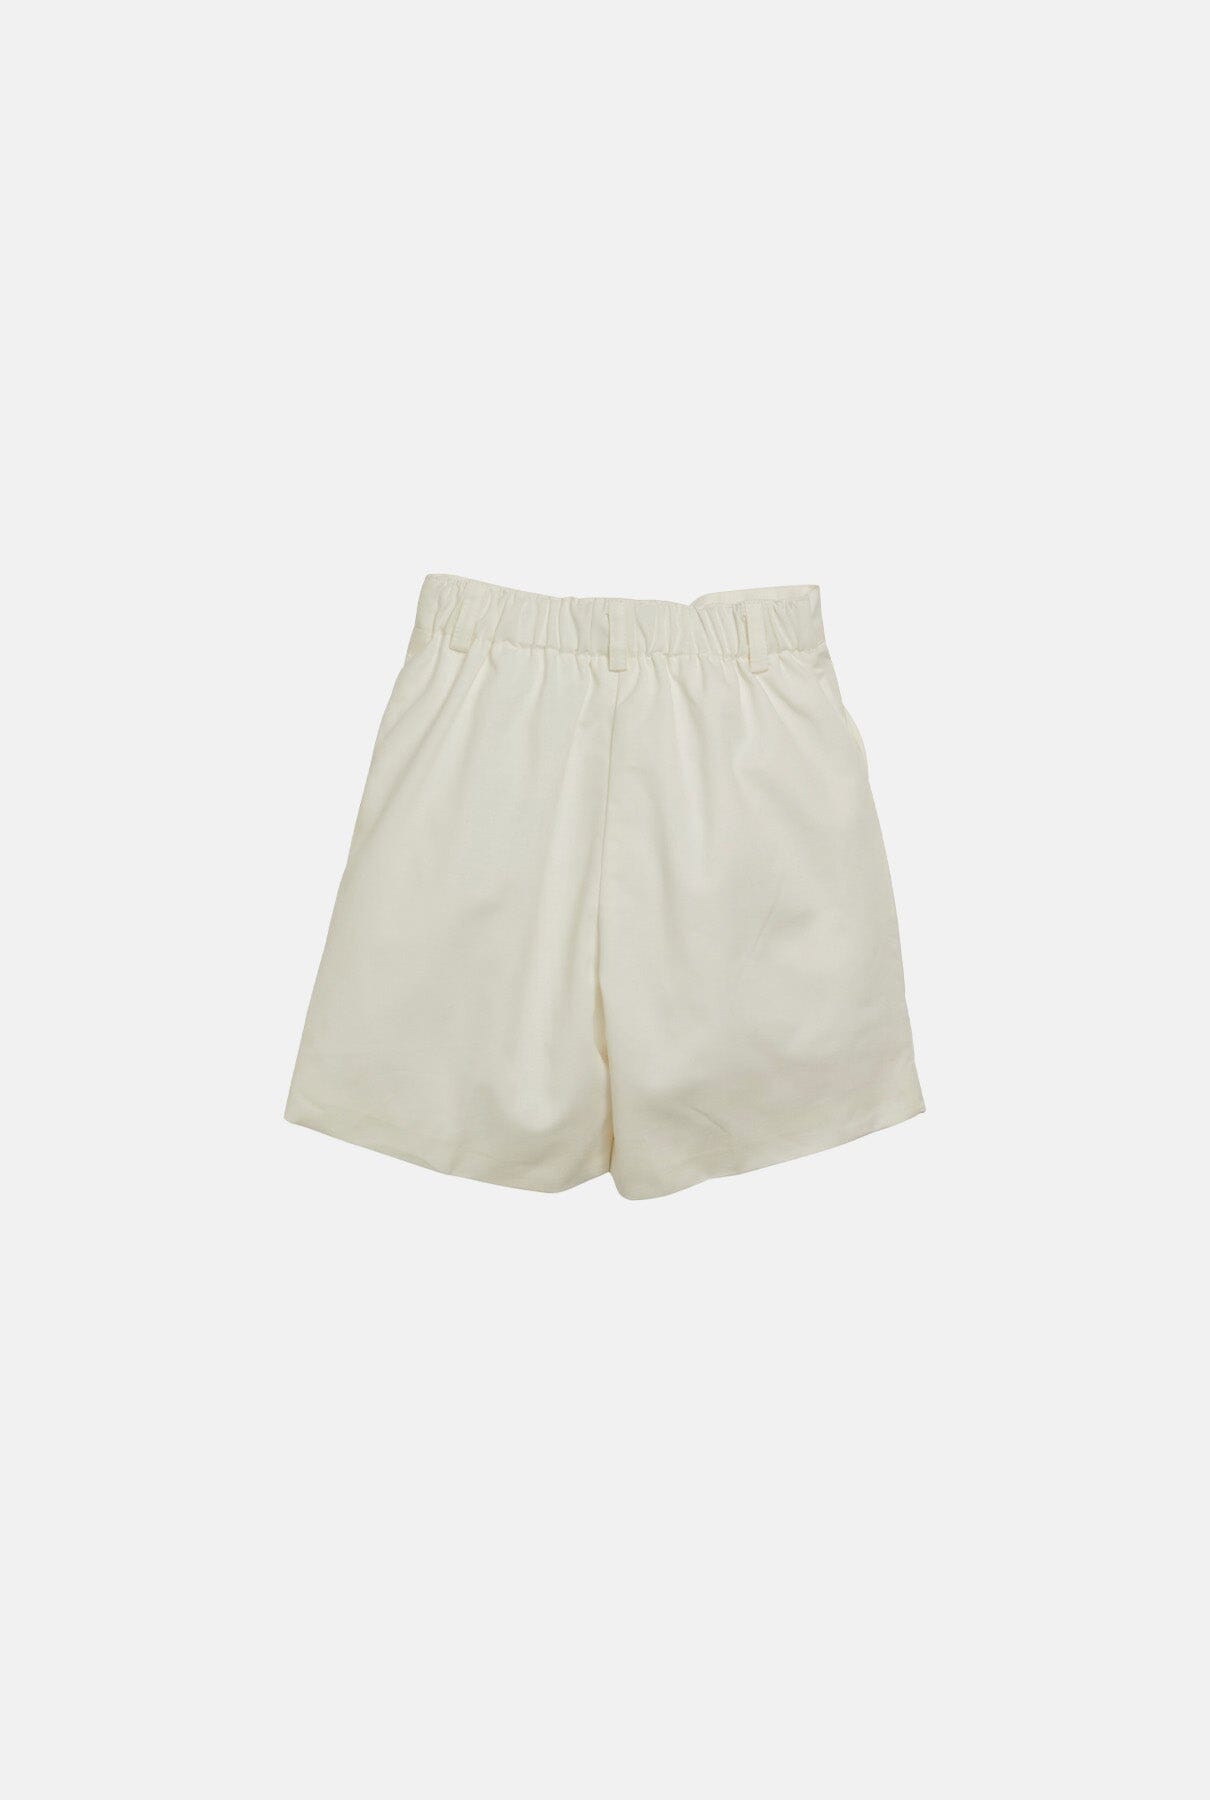 Gull Shorts Off-White Kids Clothing Amaia London 